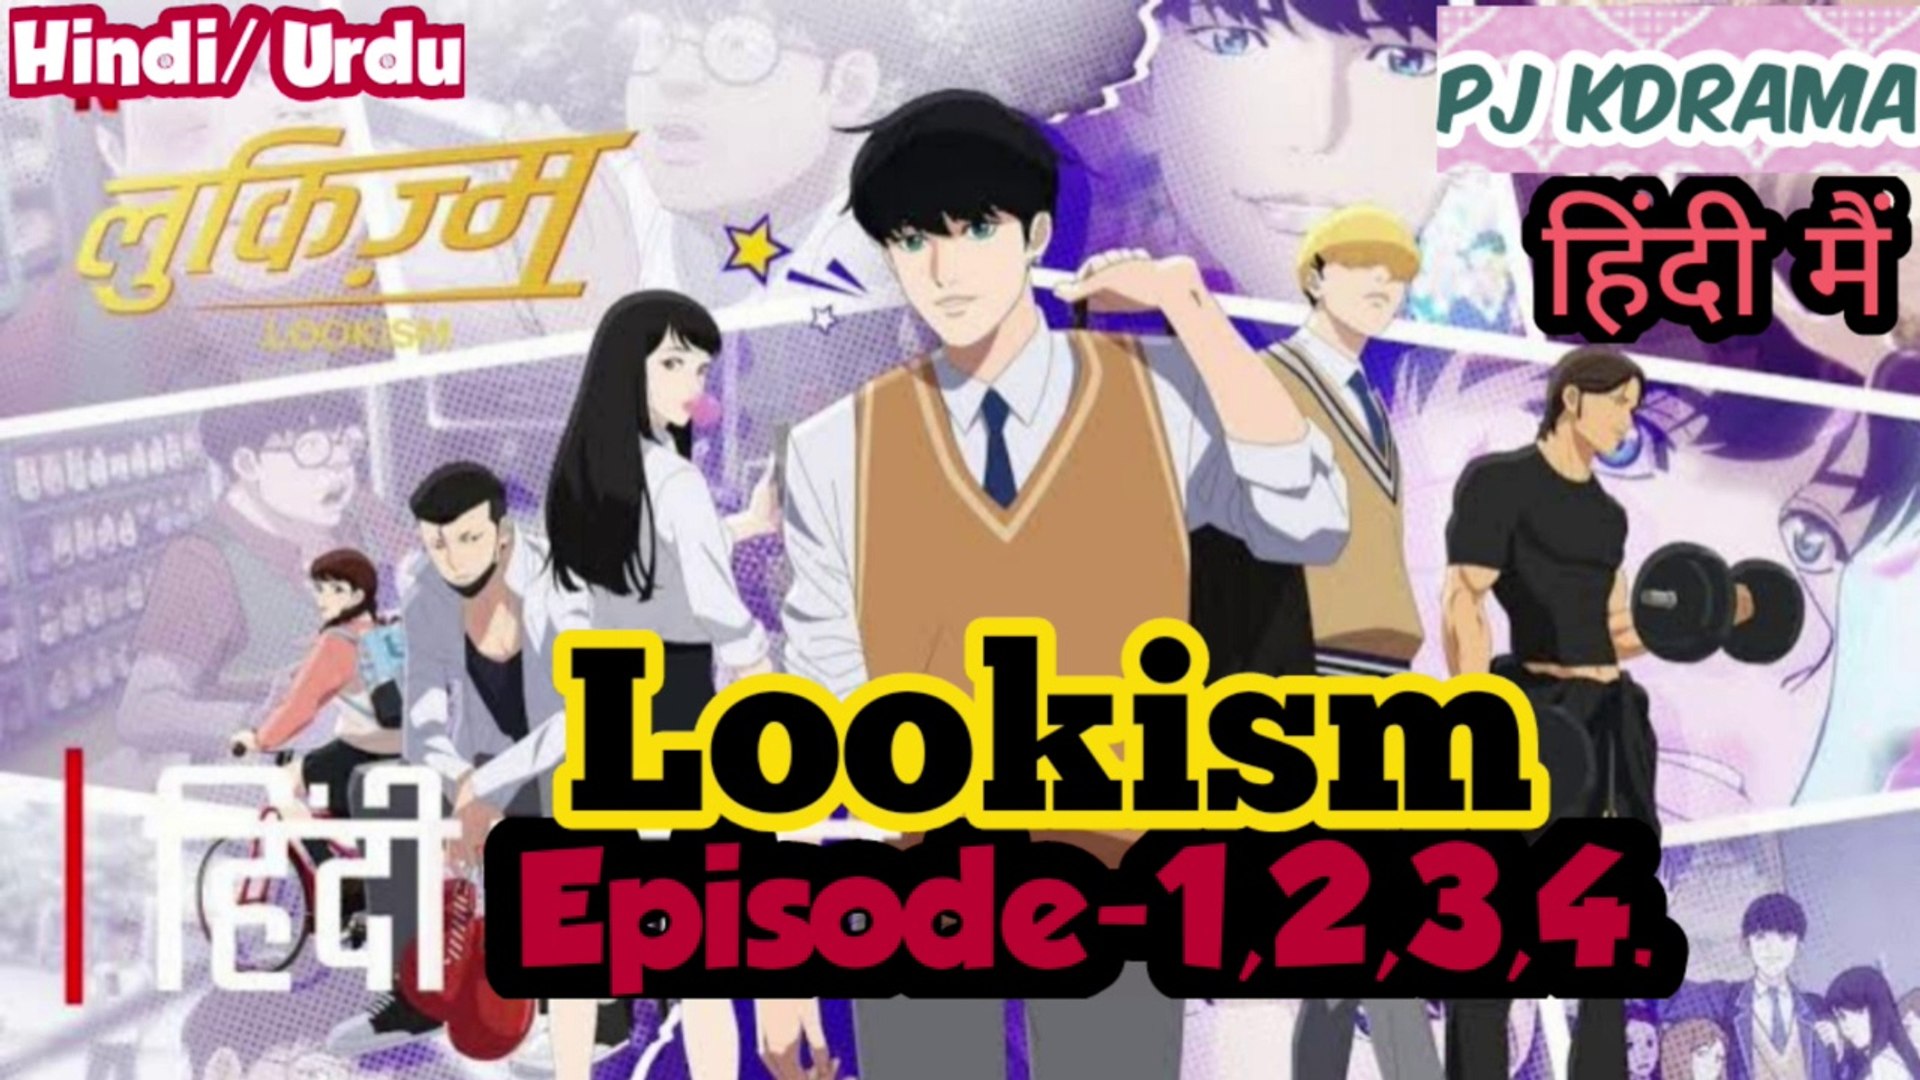 Lookism Episode -1,2,3,4. (Urdu/Hindi Dubbed) English Subtitle #Korean  An!me #Kdrama #PJKdrama #2023 - video Dailymotion